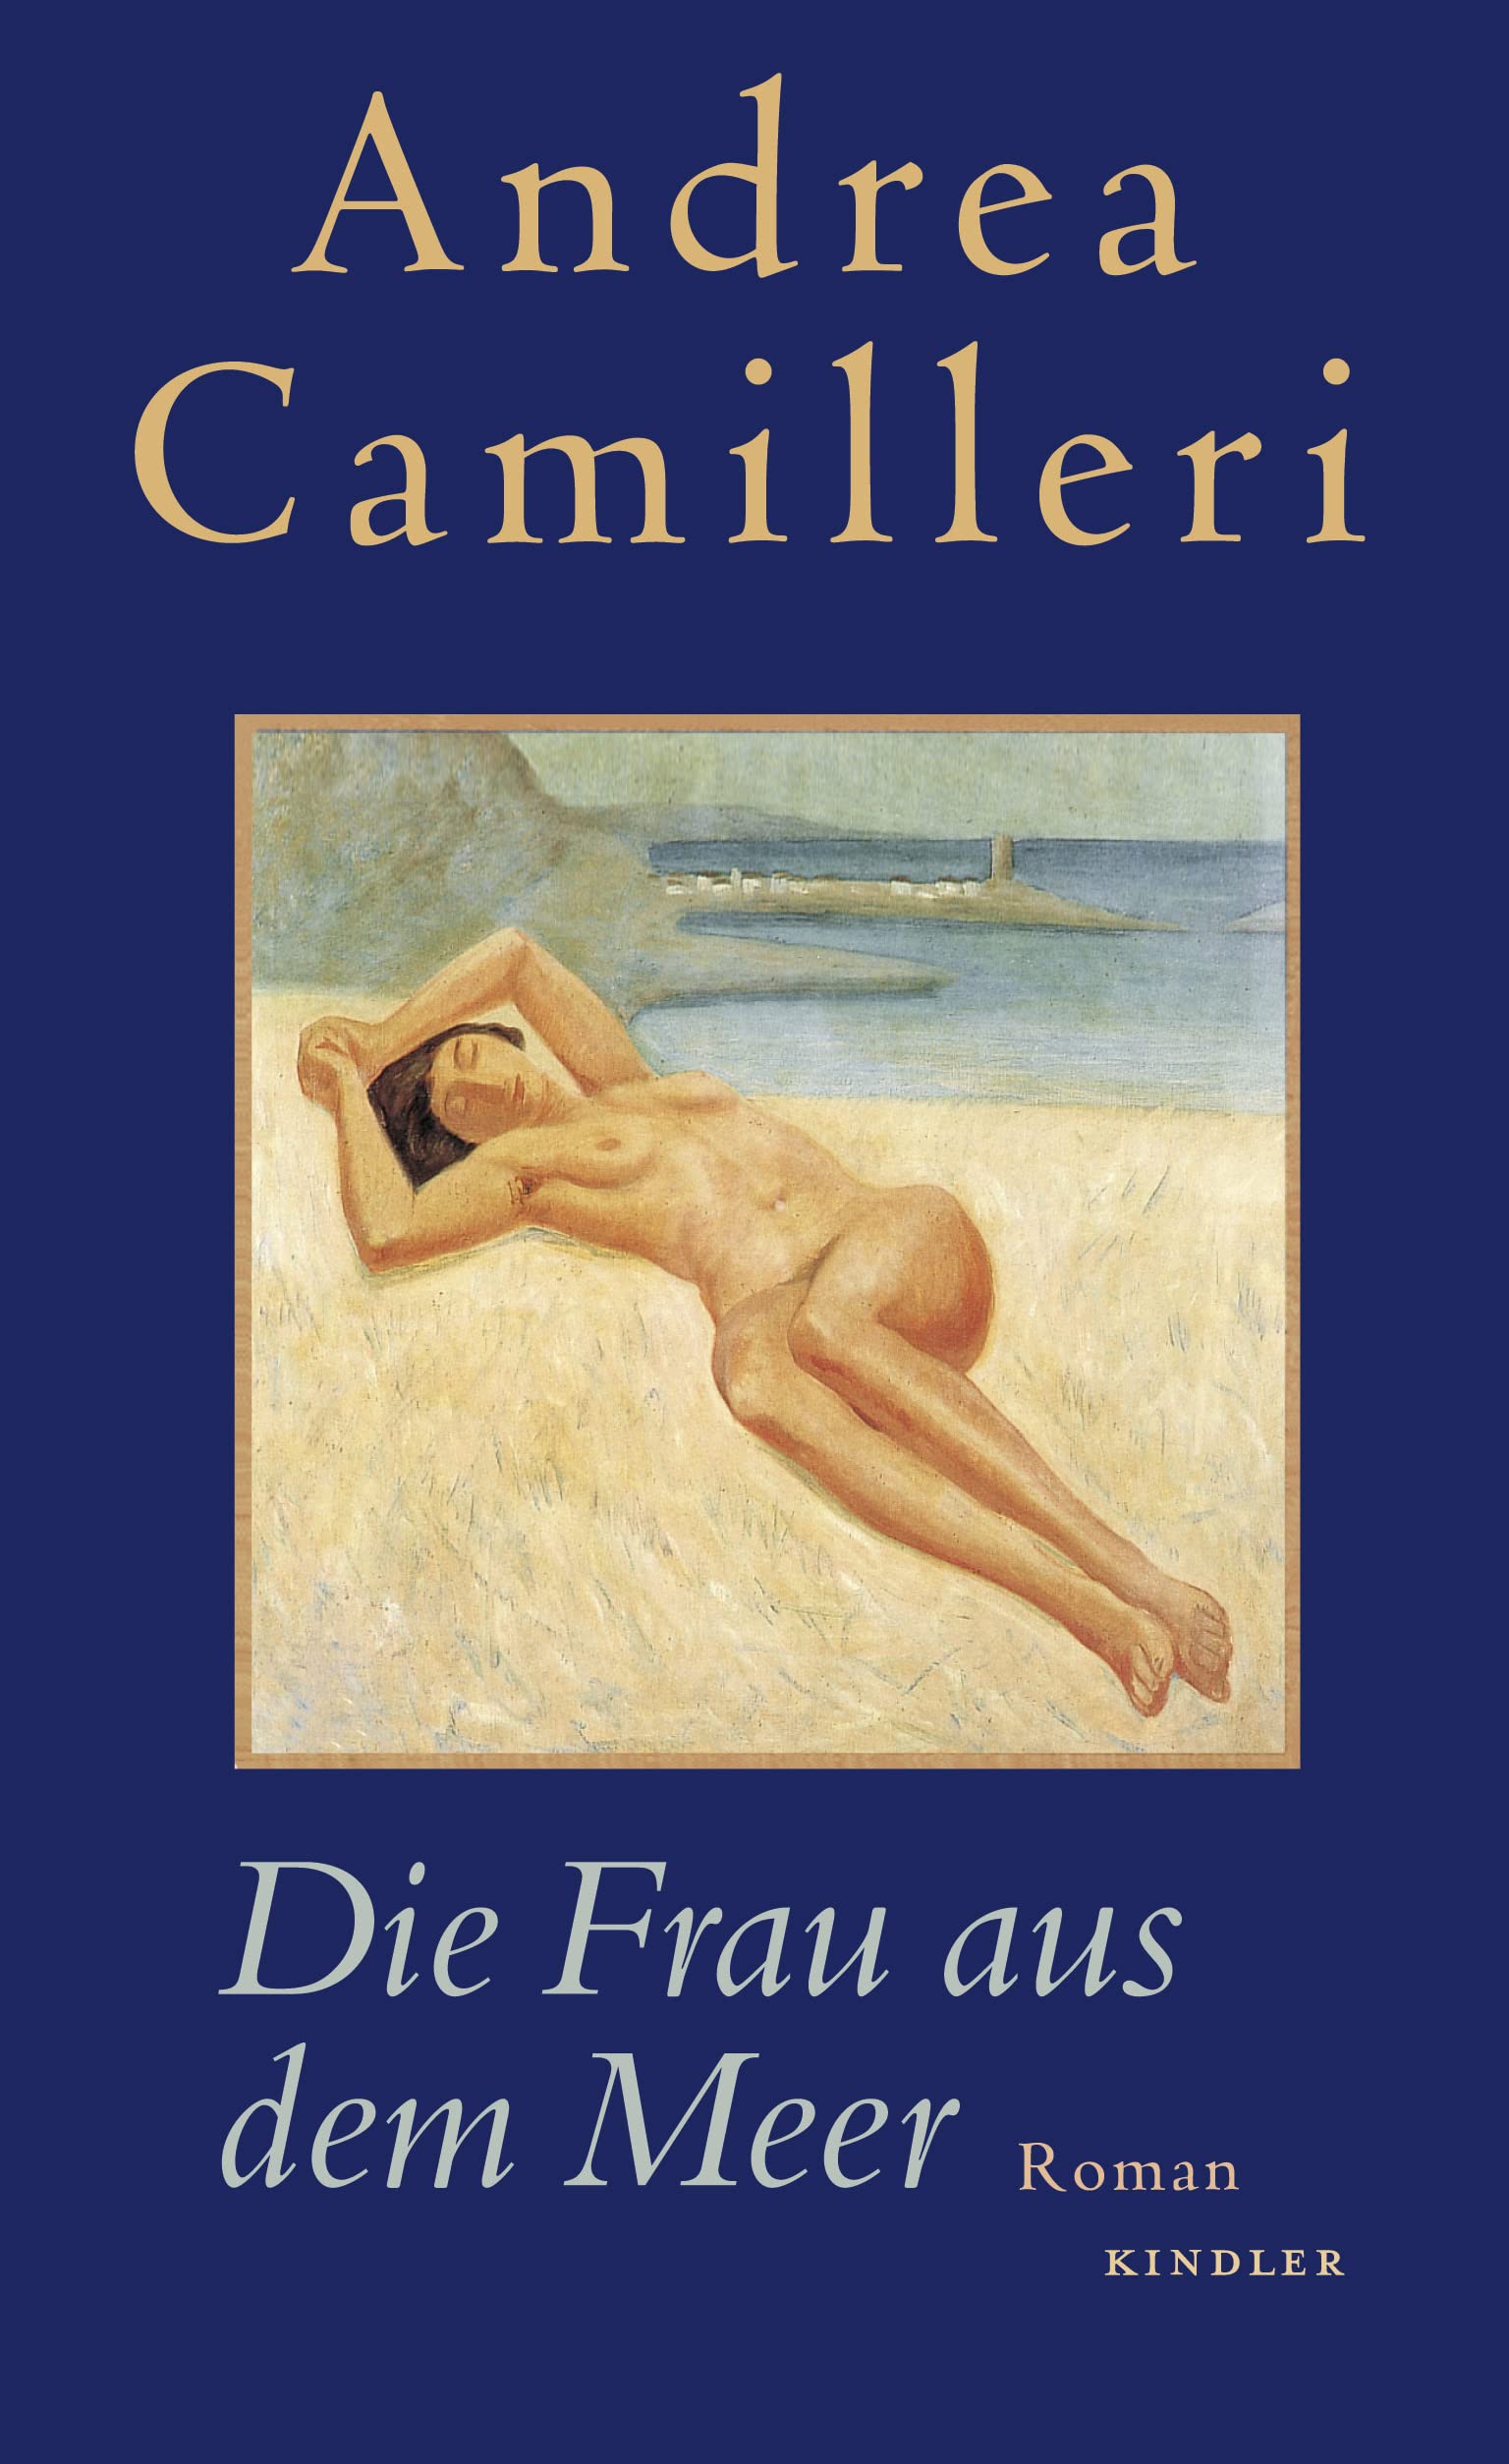 Buchcover - Expressionistisches Gemälde einer nackten am Strand liegenden Frau